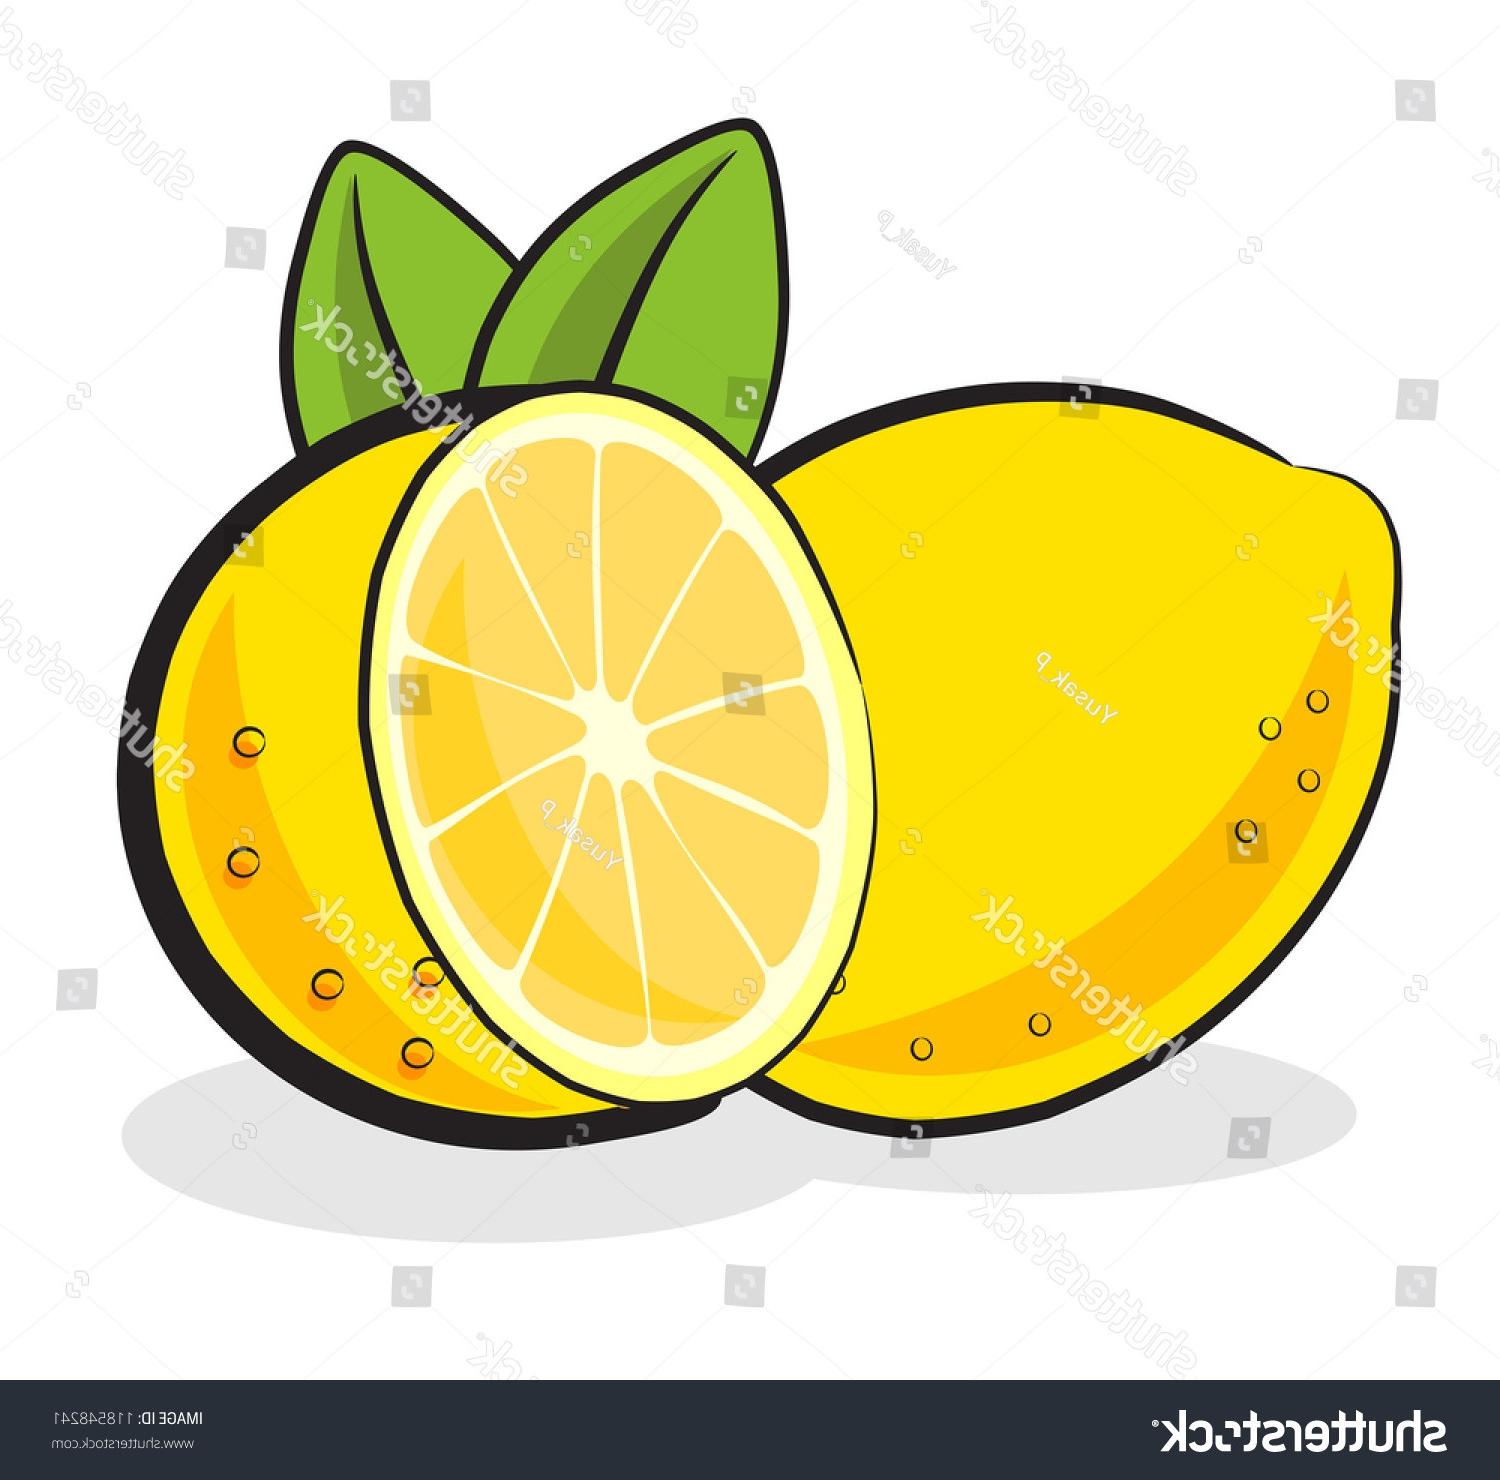 Printable Lemons - Printable Templates